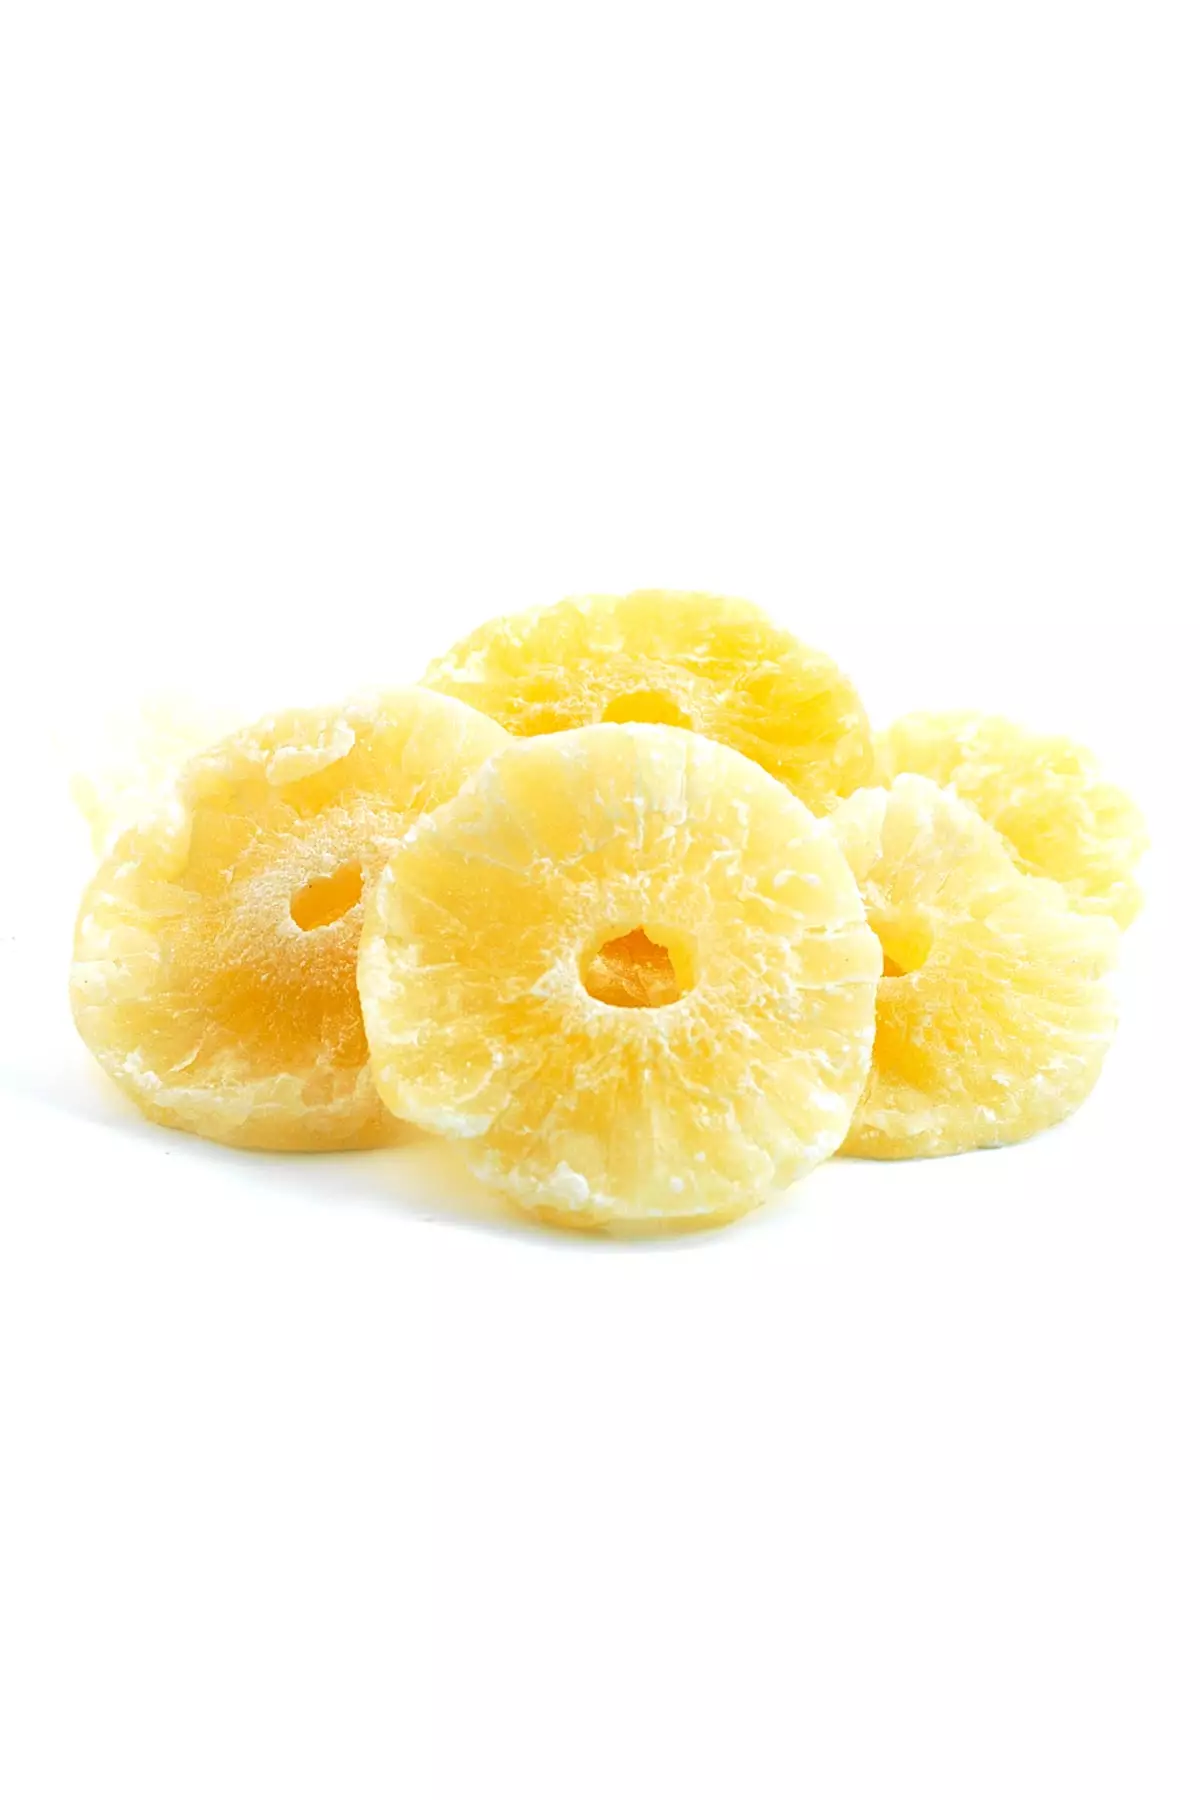 Meray Kuruyemiş Kuru Meyve Ananas 500 Gr